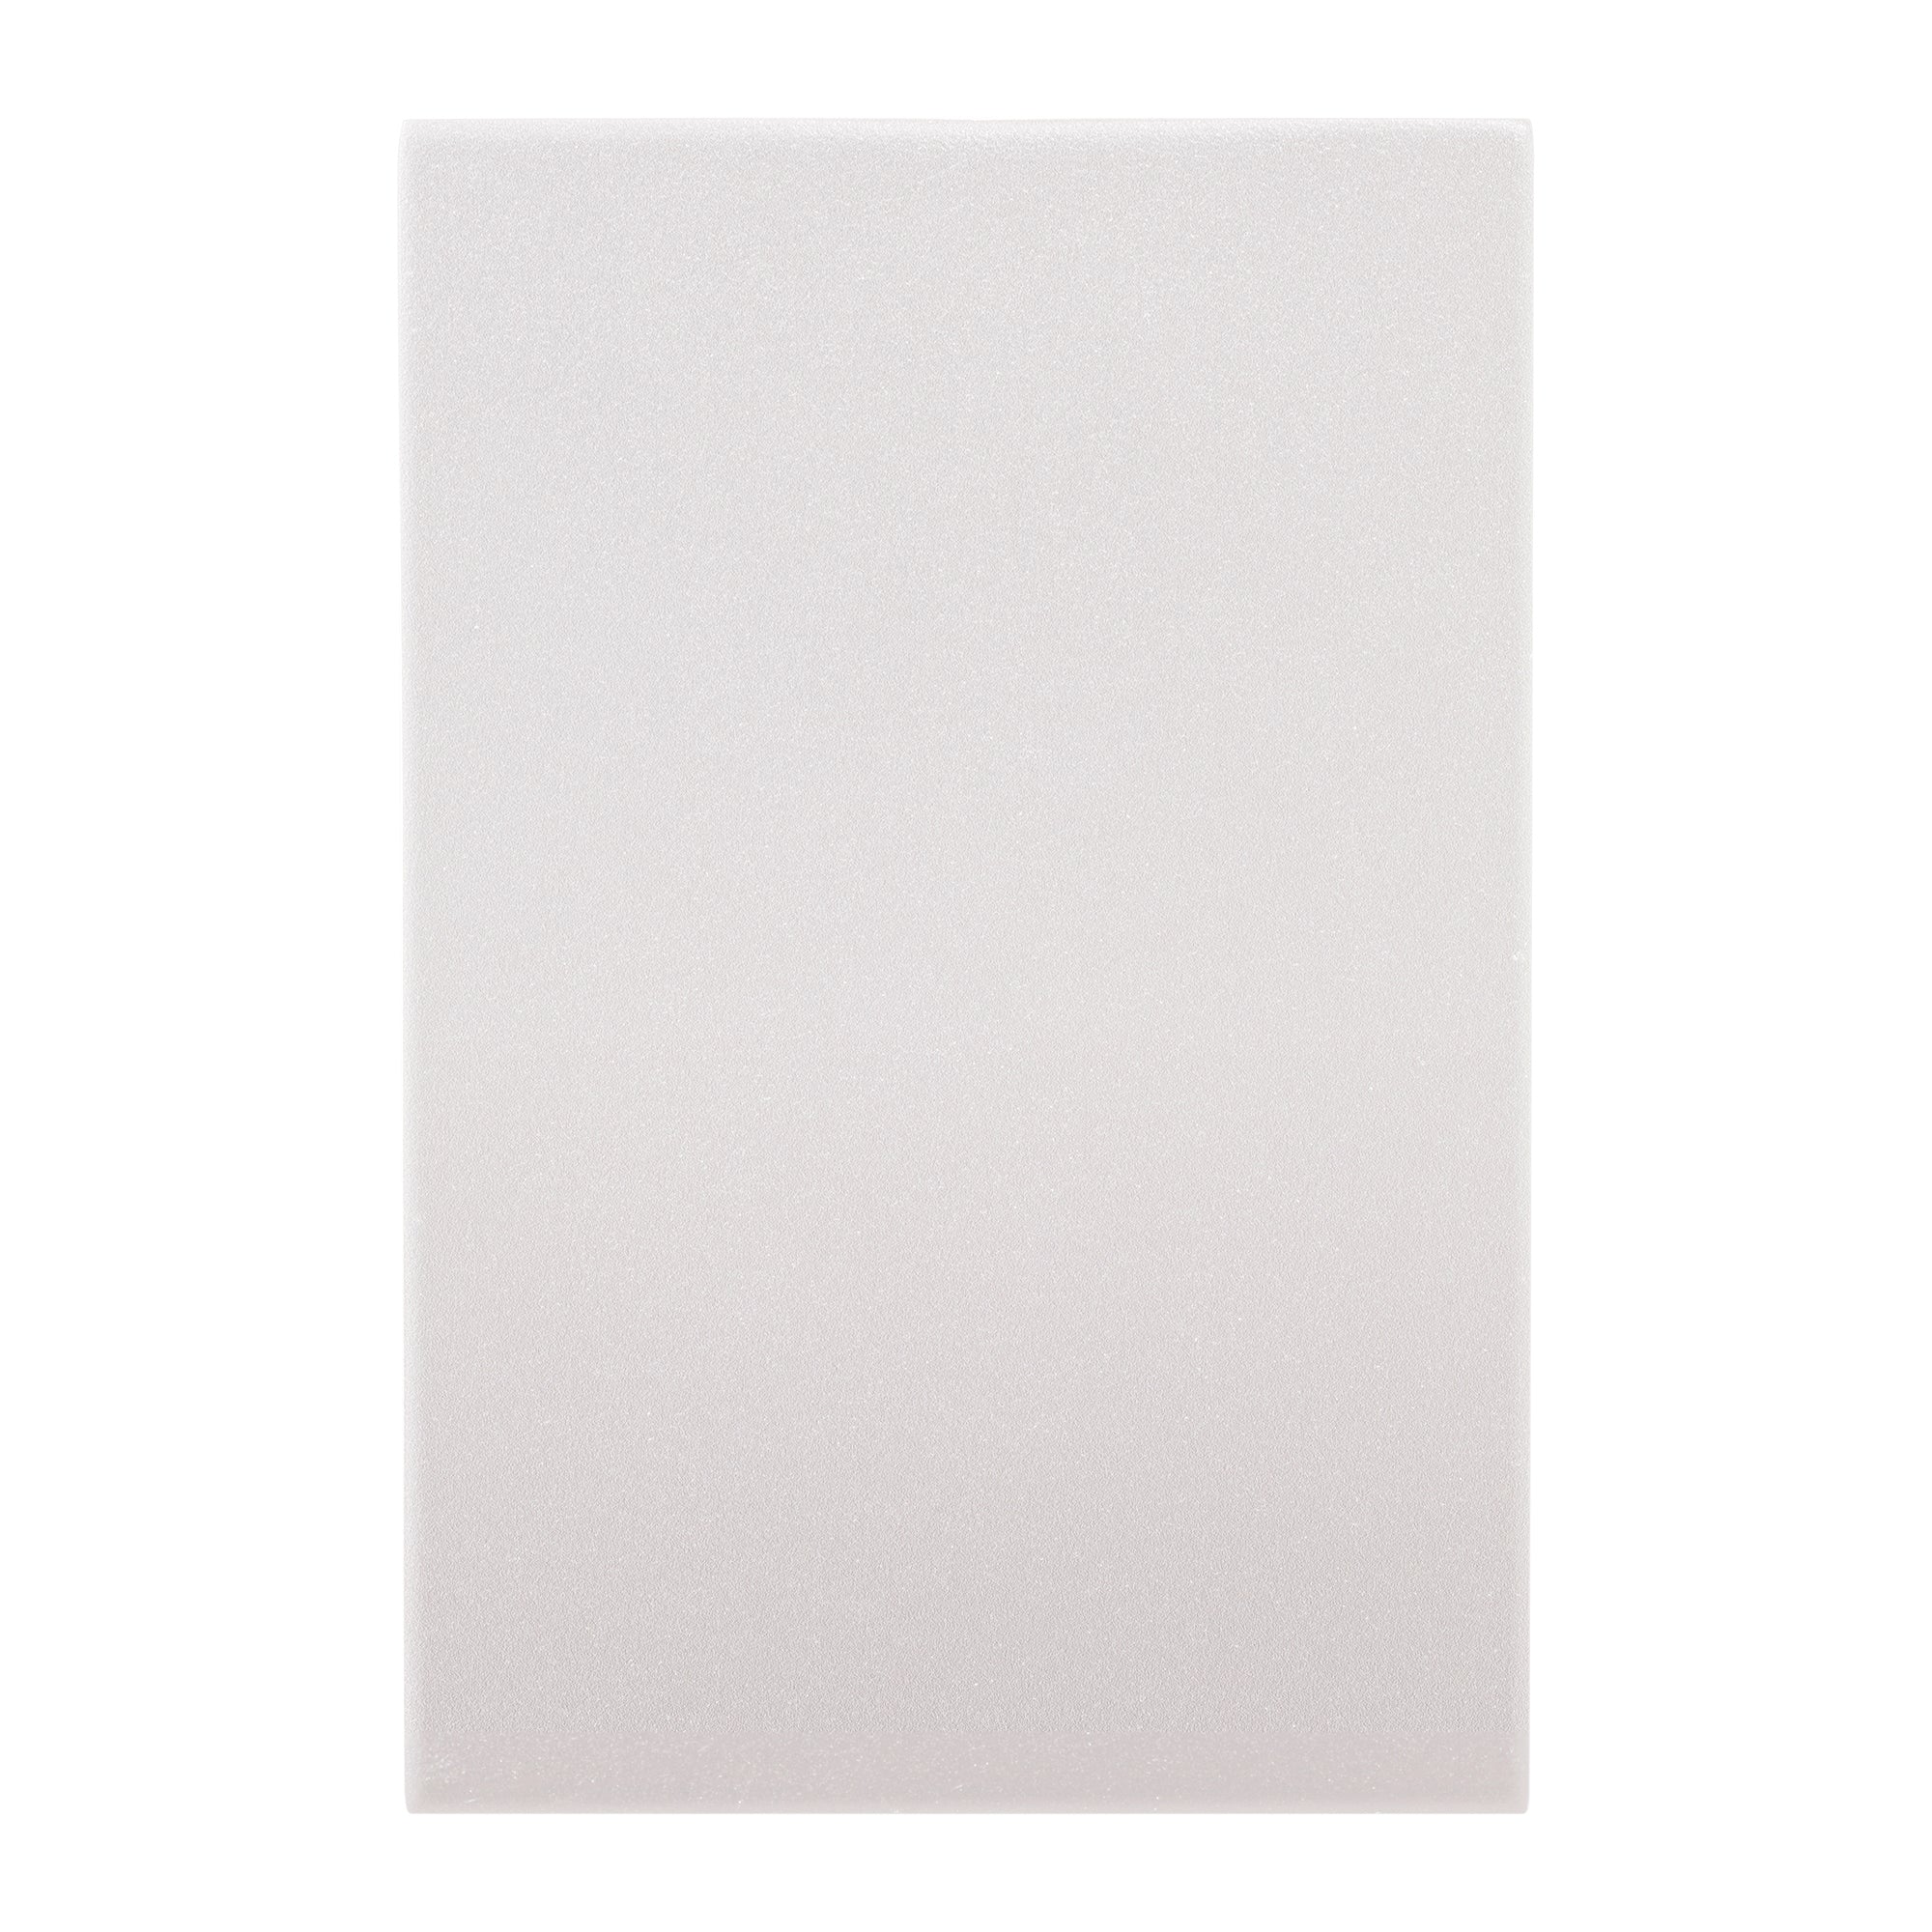 HV3289-WHT - Stylez White Up & Down LED Wall Light